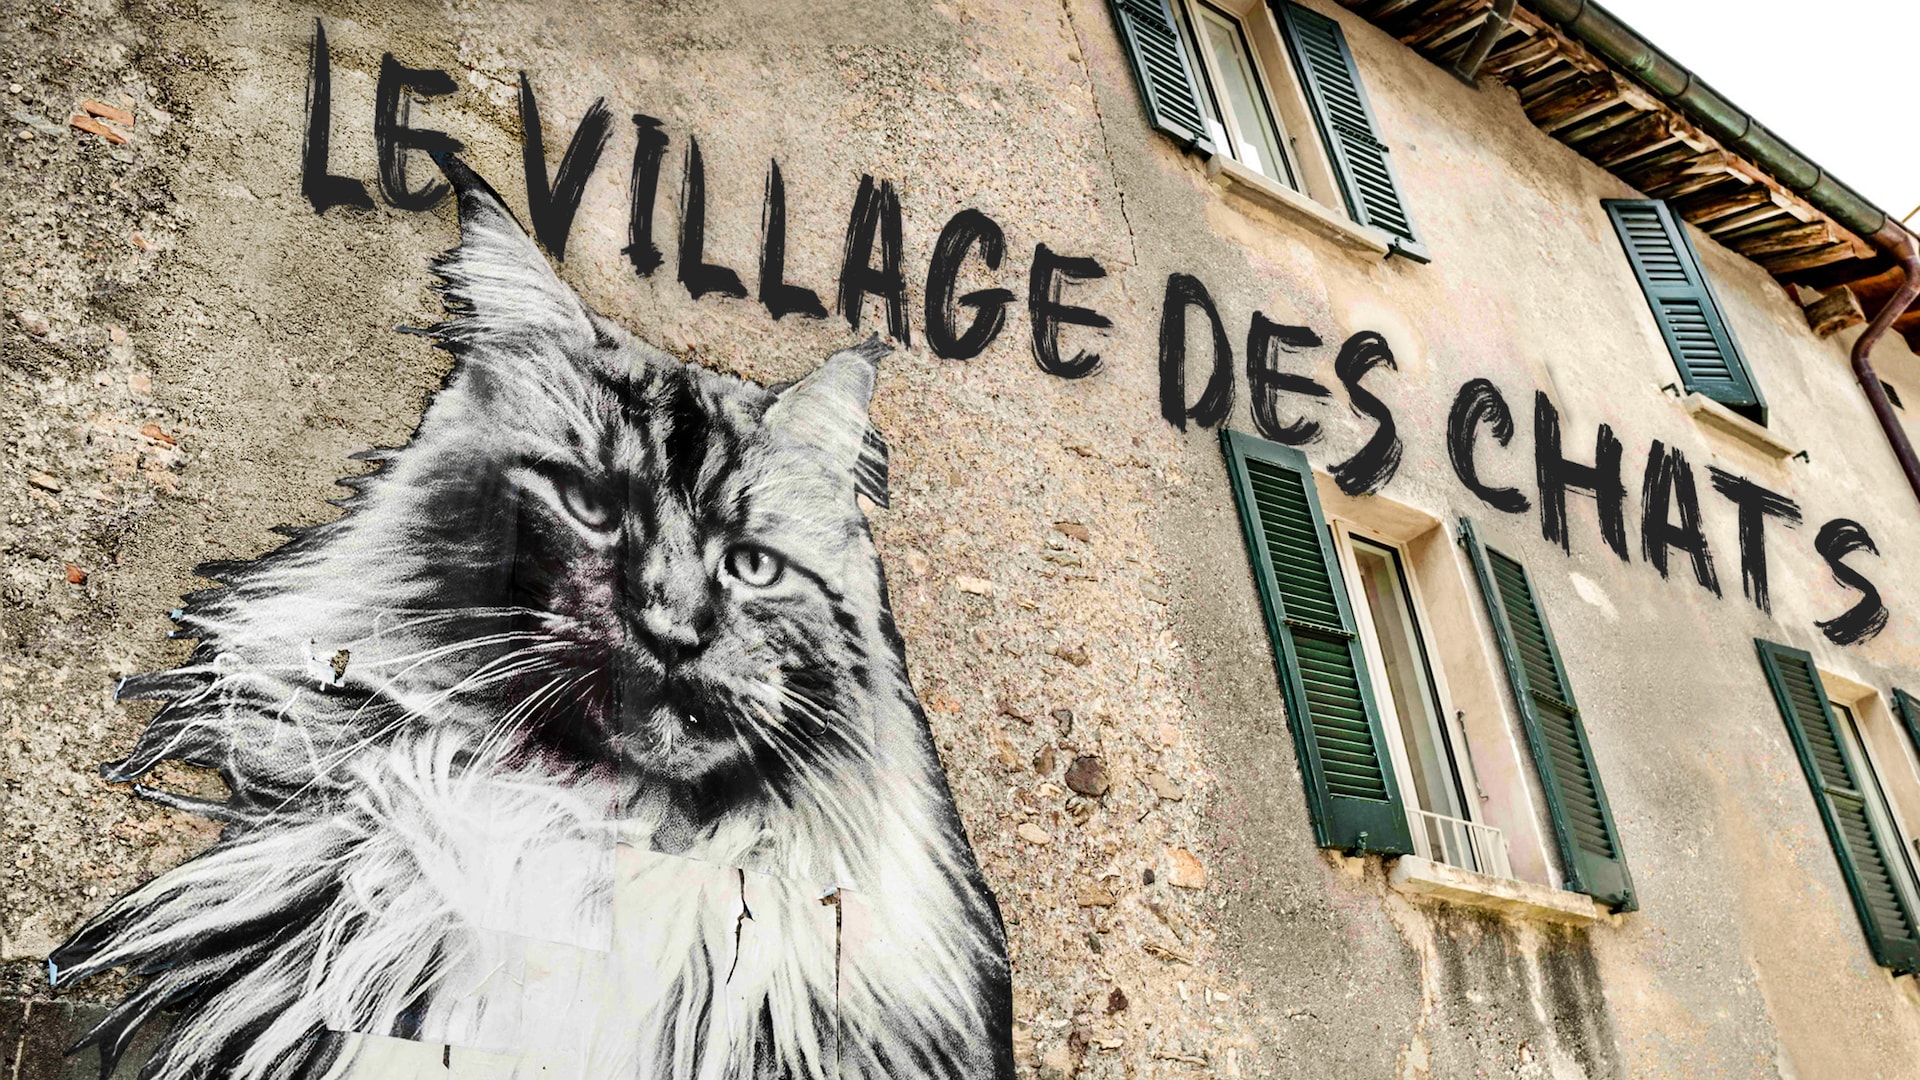 Le village des chats